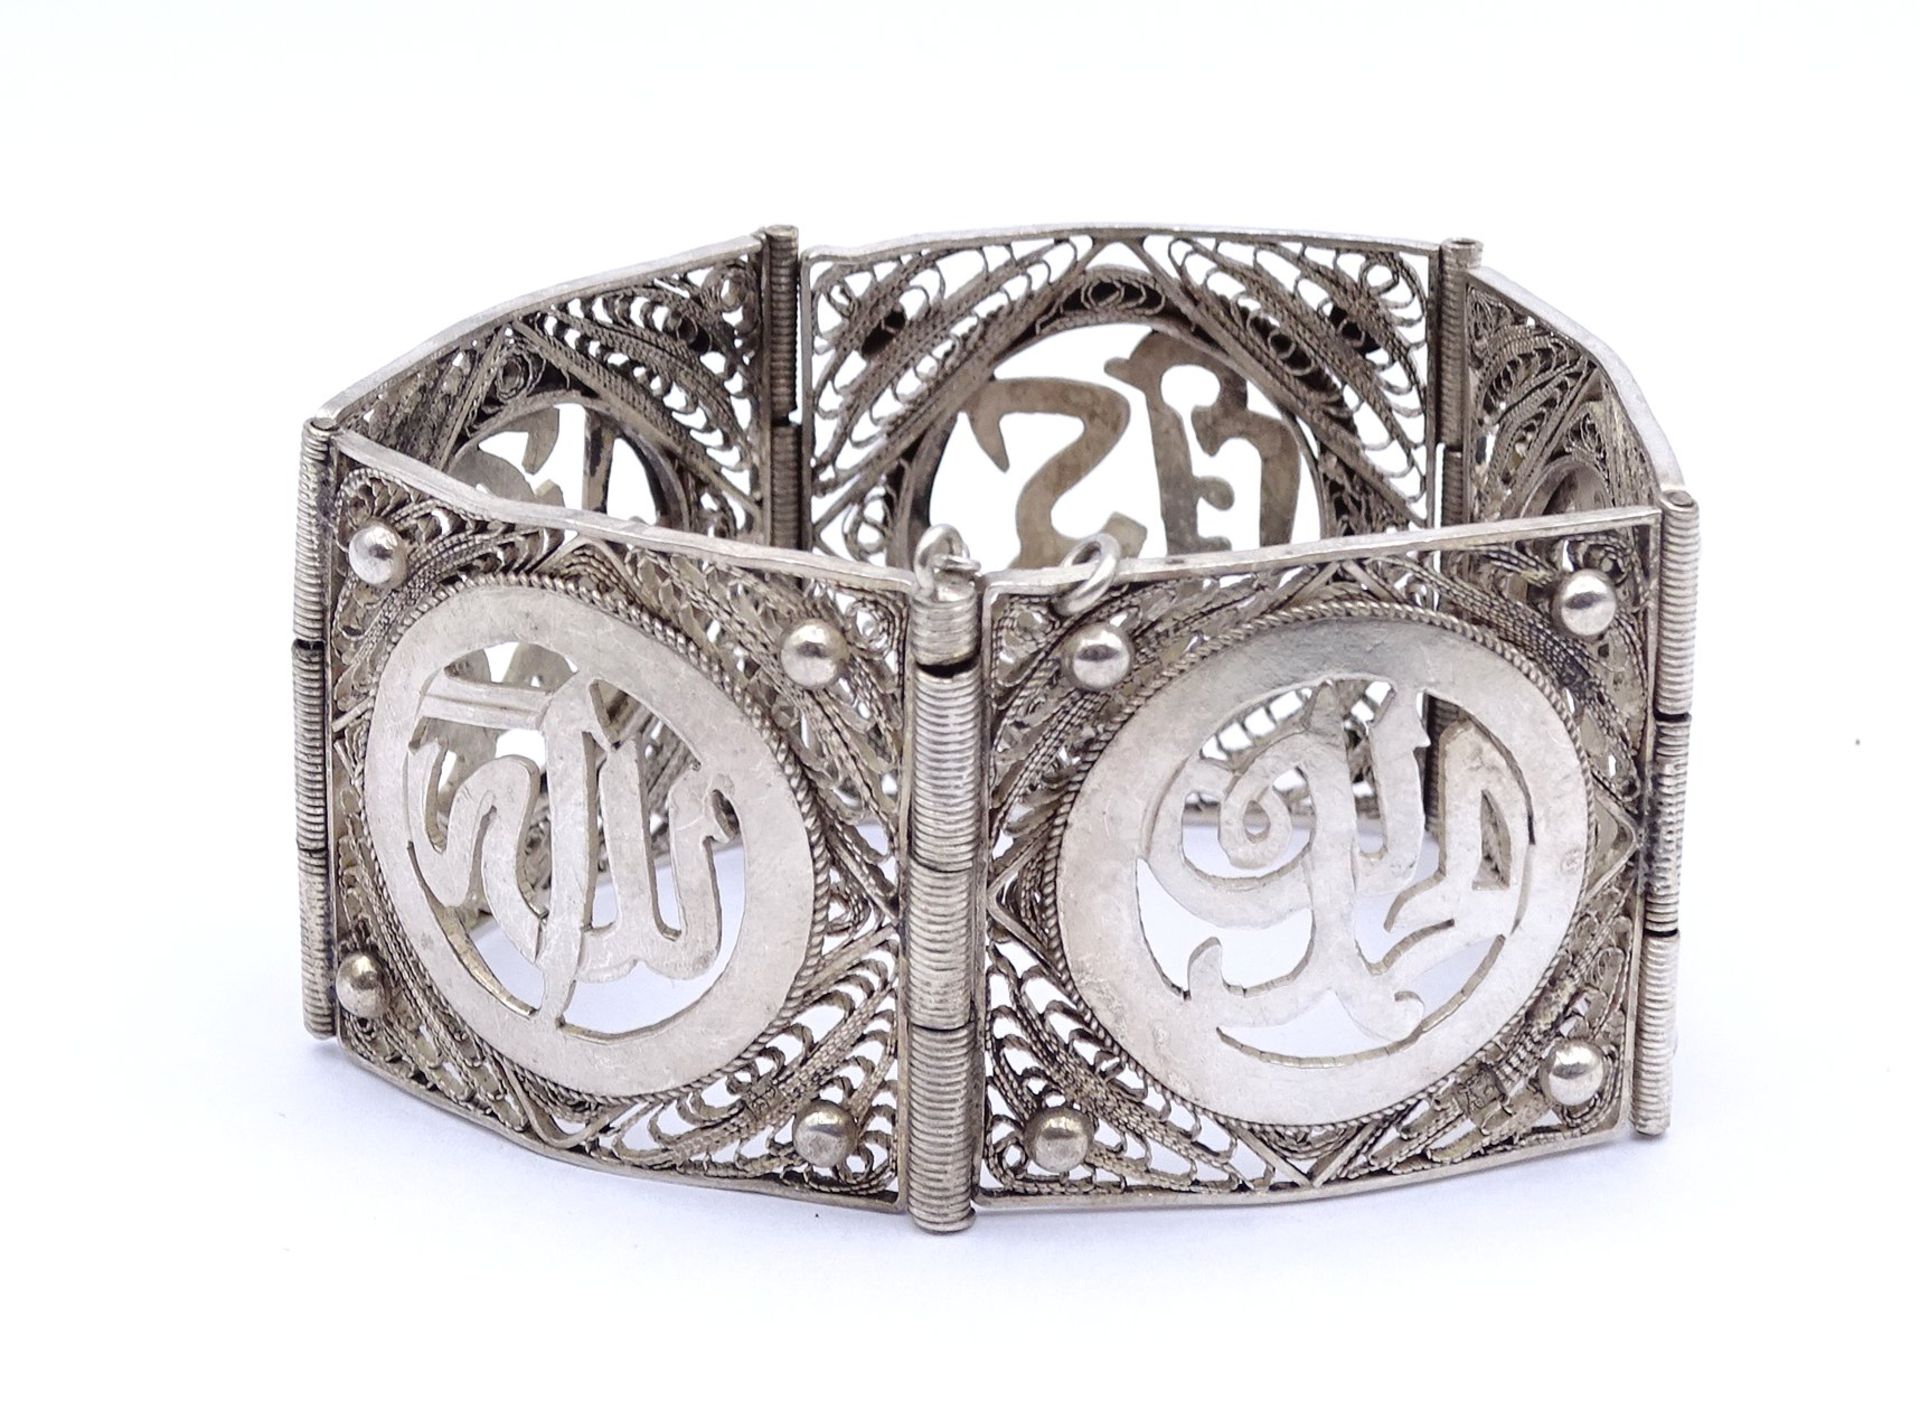 Orientalisches Silber Armband, ungestempelt - geprüft, L. 18cm, B. 3,5cm, 51,5g. - Image 4 of 5